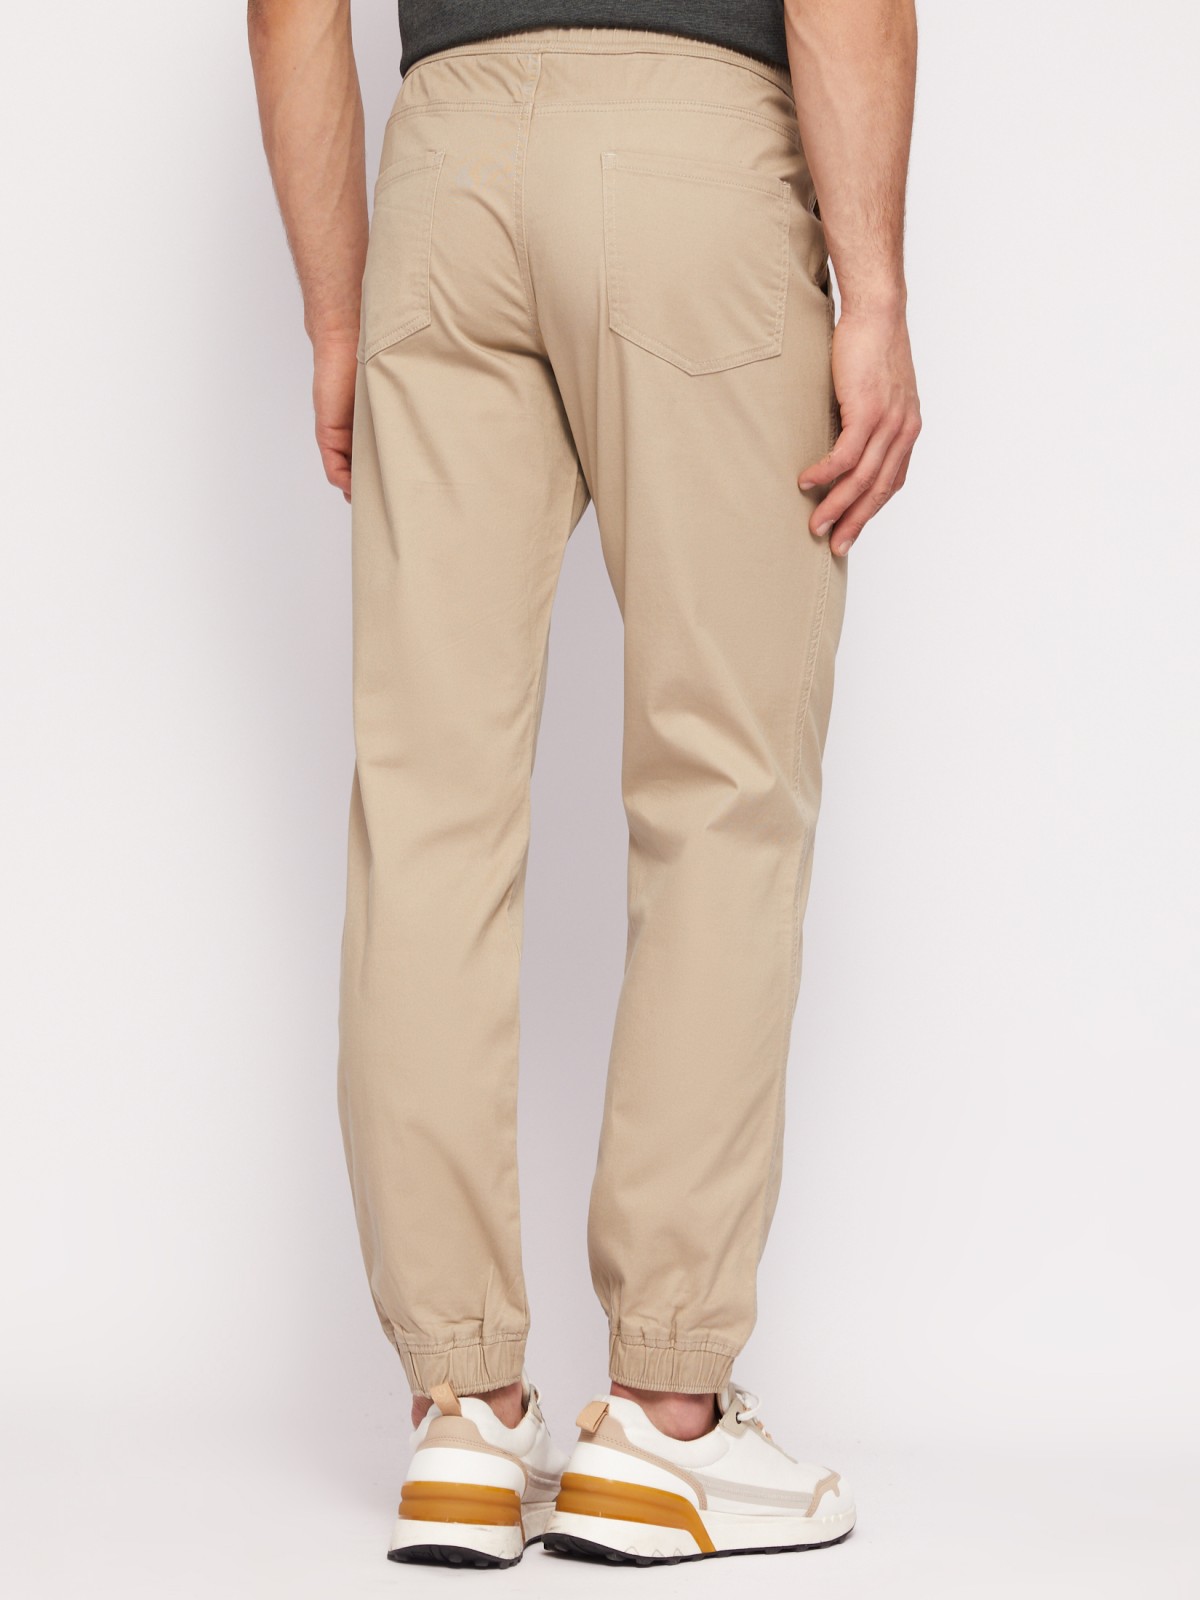 Прямые брюки-джоггеры из хлопка на резинке zolla N1421730L012, цвет бежевый, размер 34 - фото 6